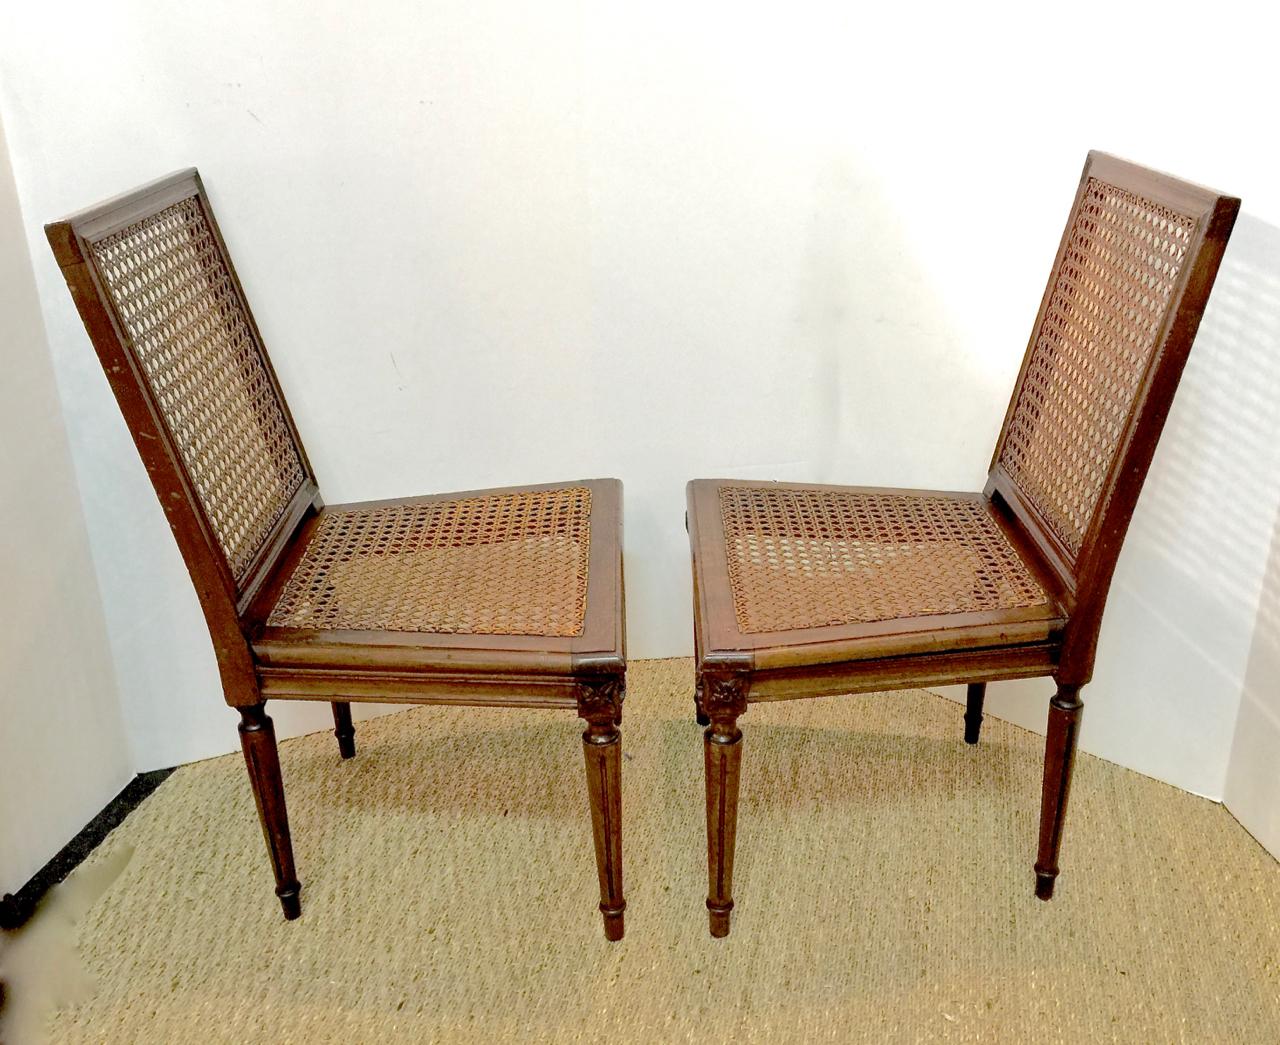 Dies ist ein wunderschönes Paar von Stühlen im Louis-XVI-Stil aus der Mitte des späten 19. Jahrhunderts, die sich in ihrem ursprünglichen Zustand befinden. Die Rahmen aus geschnitztem Nussbaumholz haben ihre ursprüngliche Sitzfläche und Rückenlehne